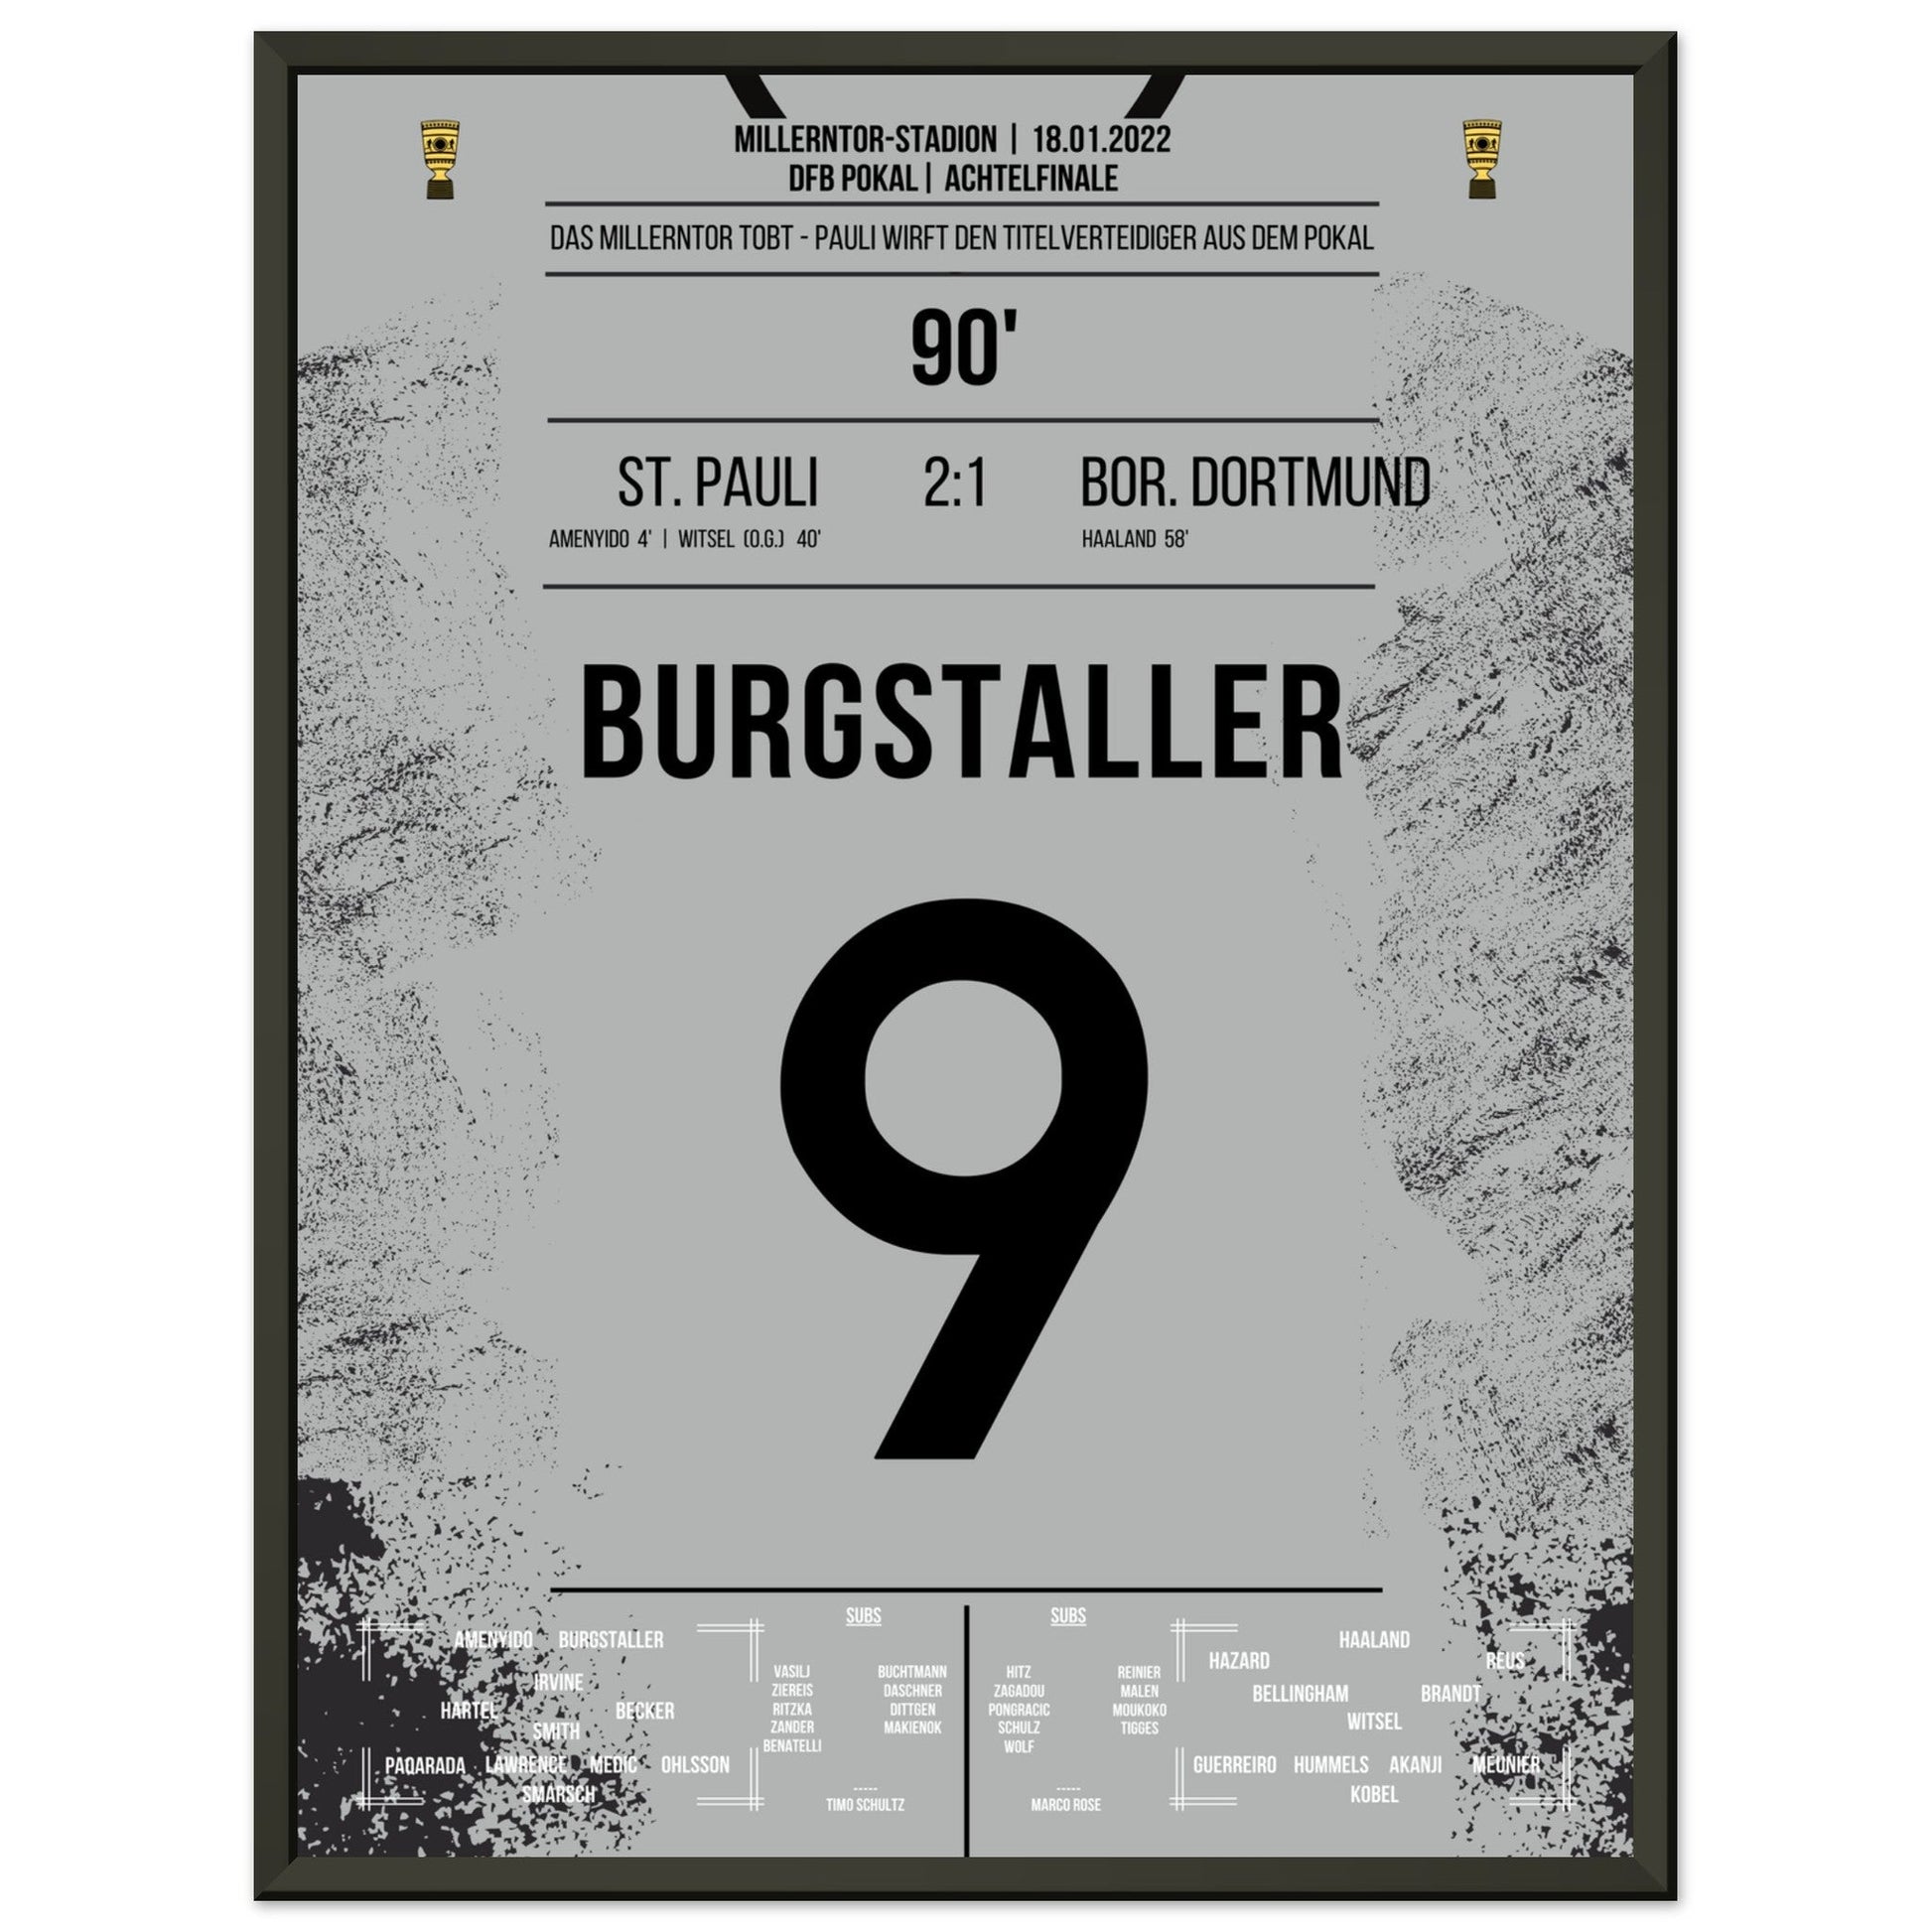 Wilde Pokalnacht auf dem Kiez! St Pauli wirft den Titelverteidiger Dortmund aus dem Pokal 